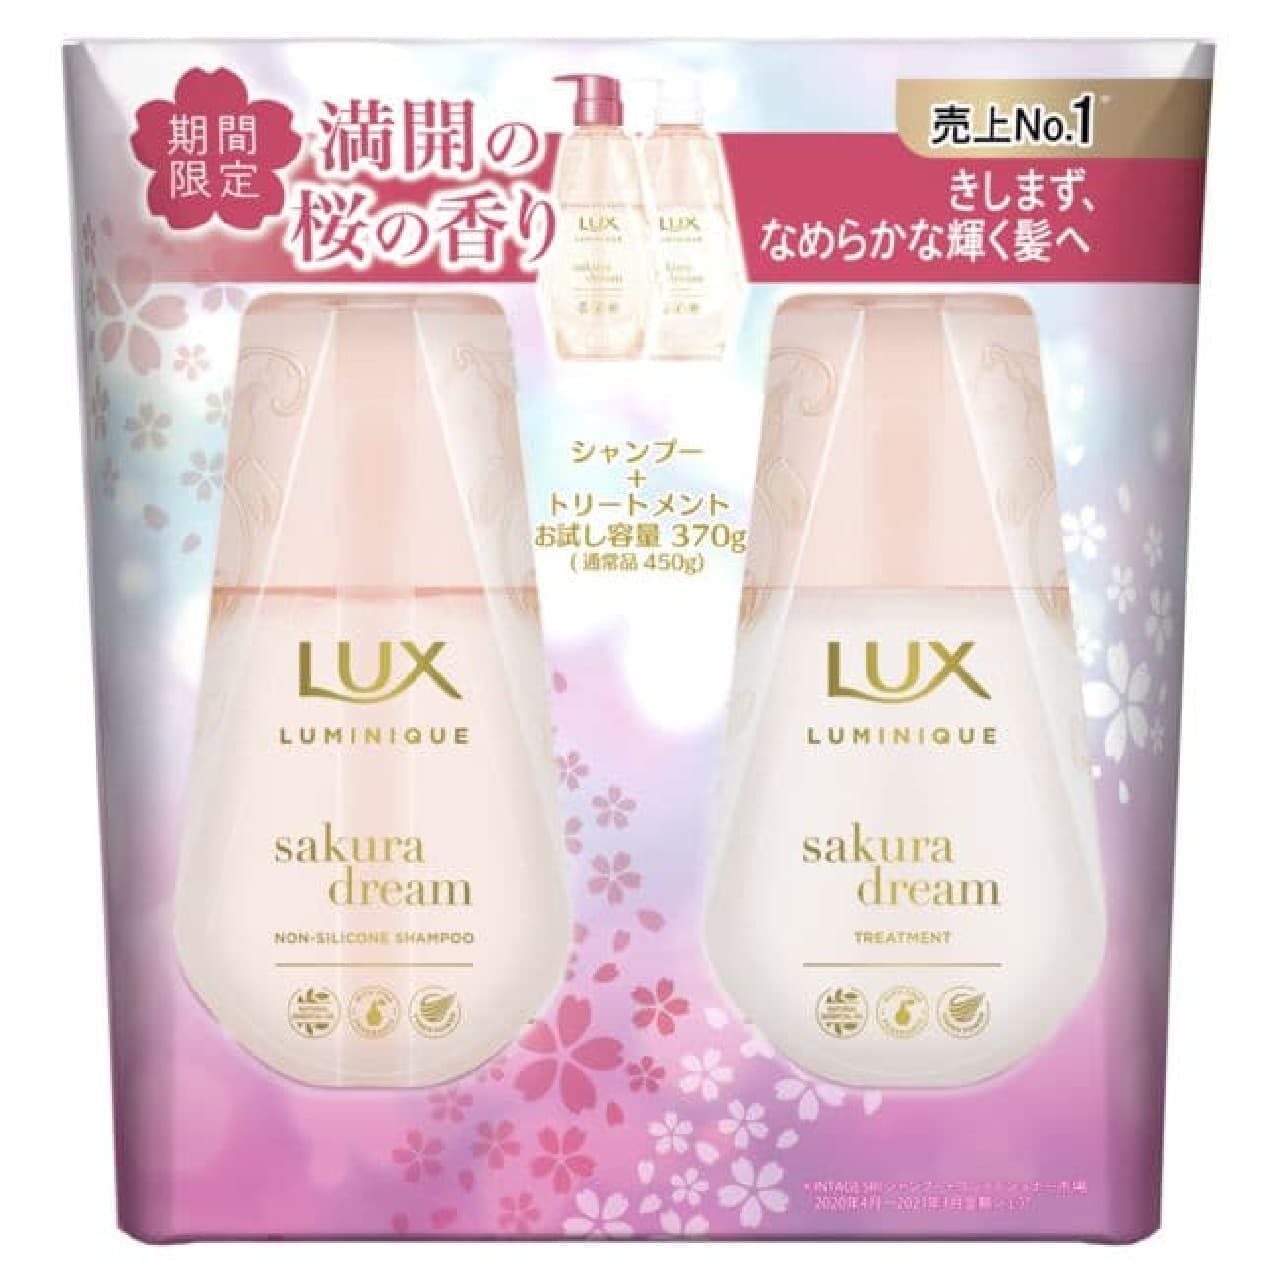 Lux Luminique Sakura Dream